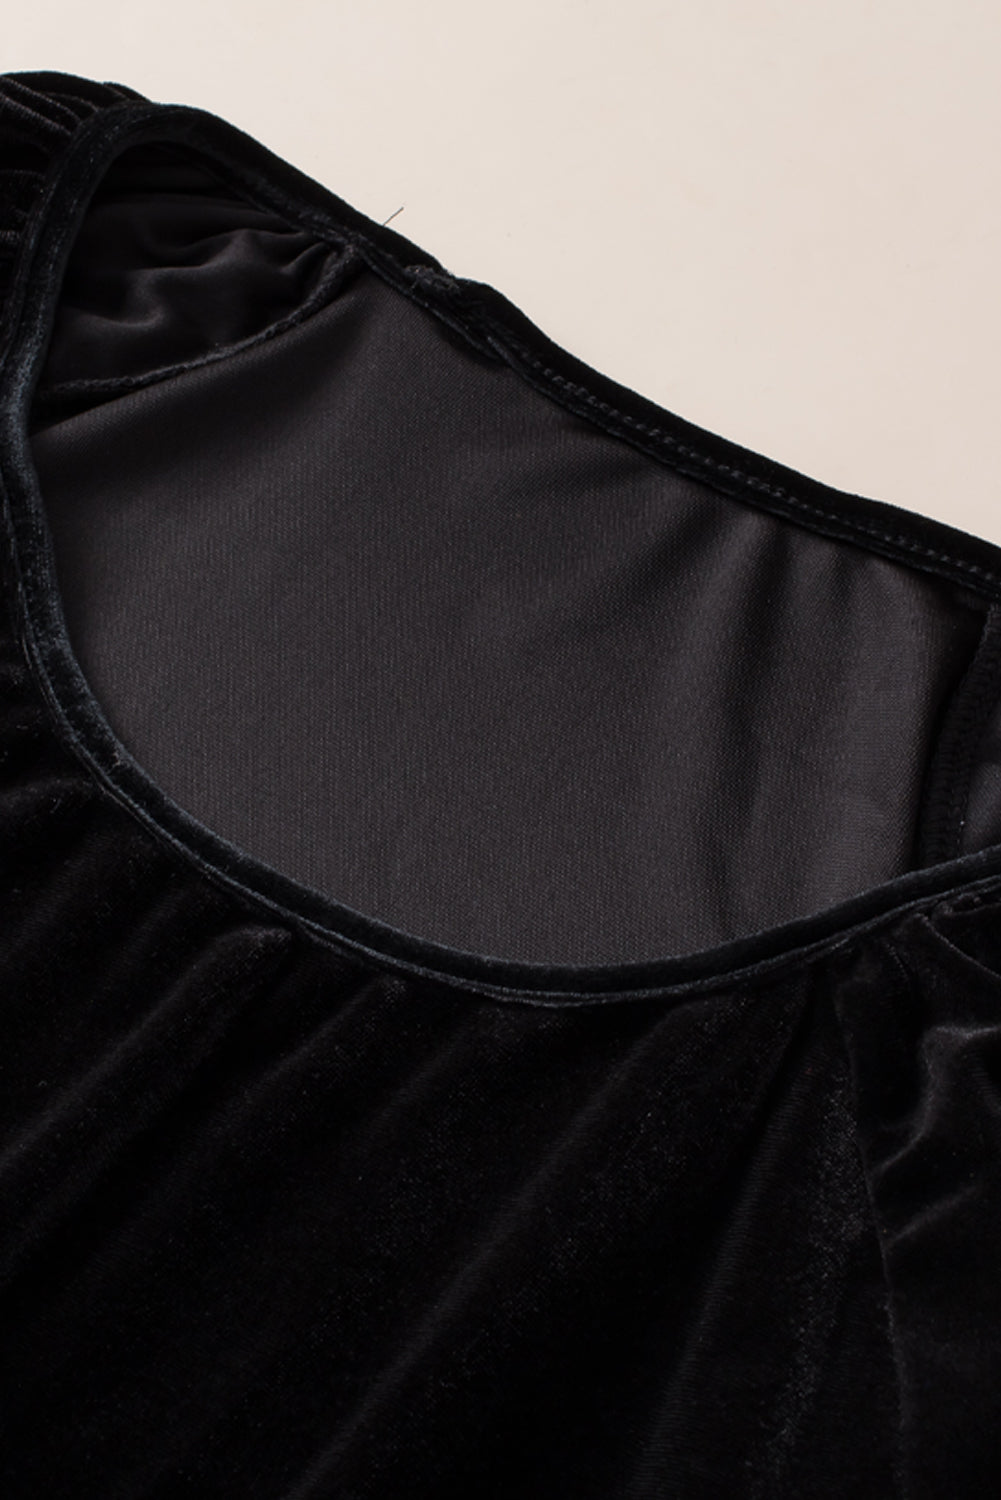 Žametna majica velike velikosti z napihnjenimi rokavi in ​​okrašenimi črnimi biseri